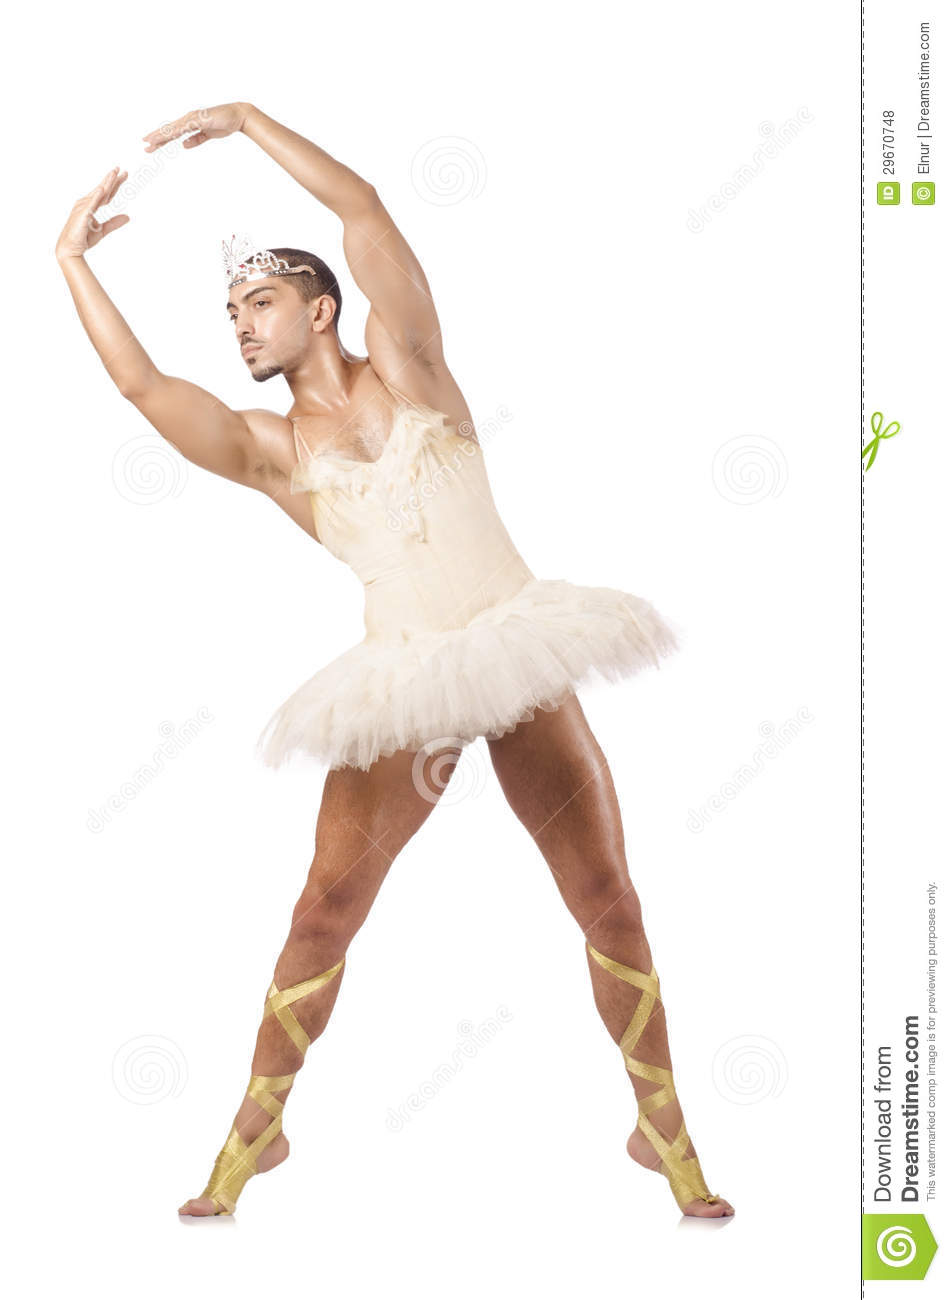 Man In Ballet Tutu Royalty Free Stock Photos   Image  29670748